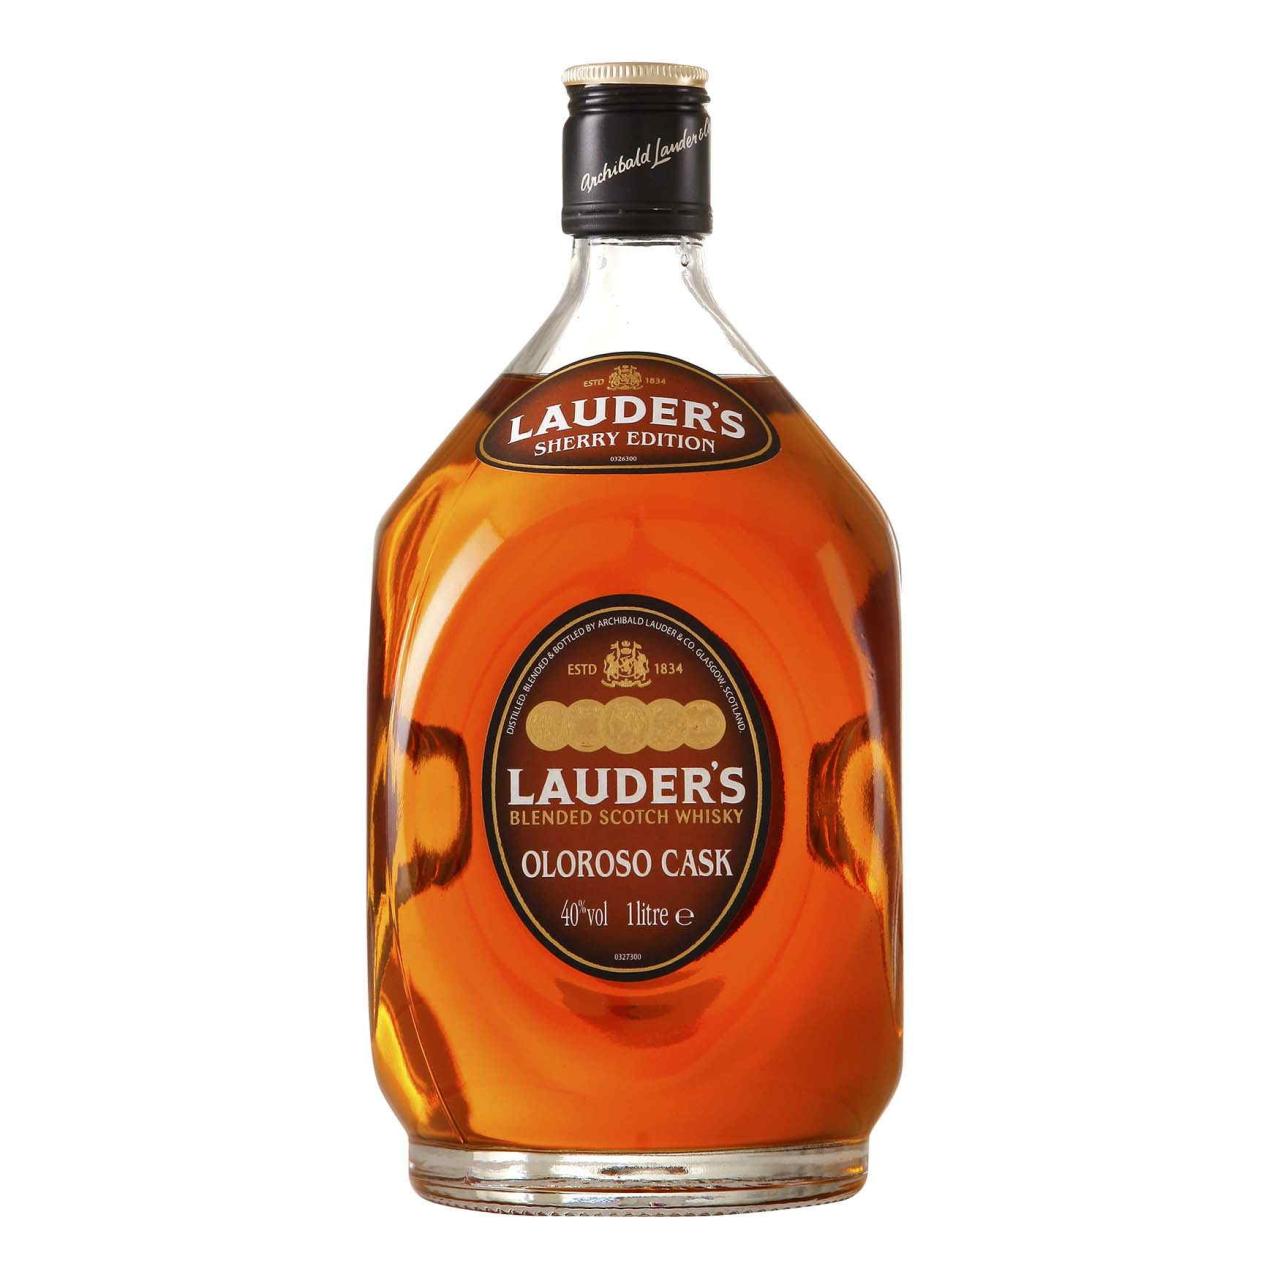 Lauder's Oloroso Cask Whisky 40% 1,0l